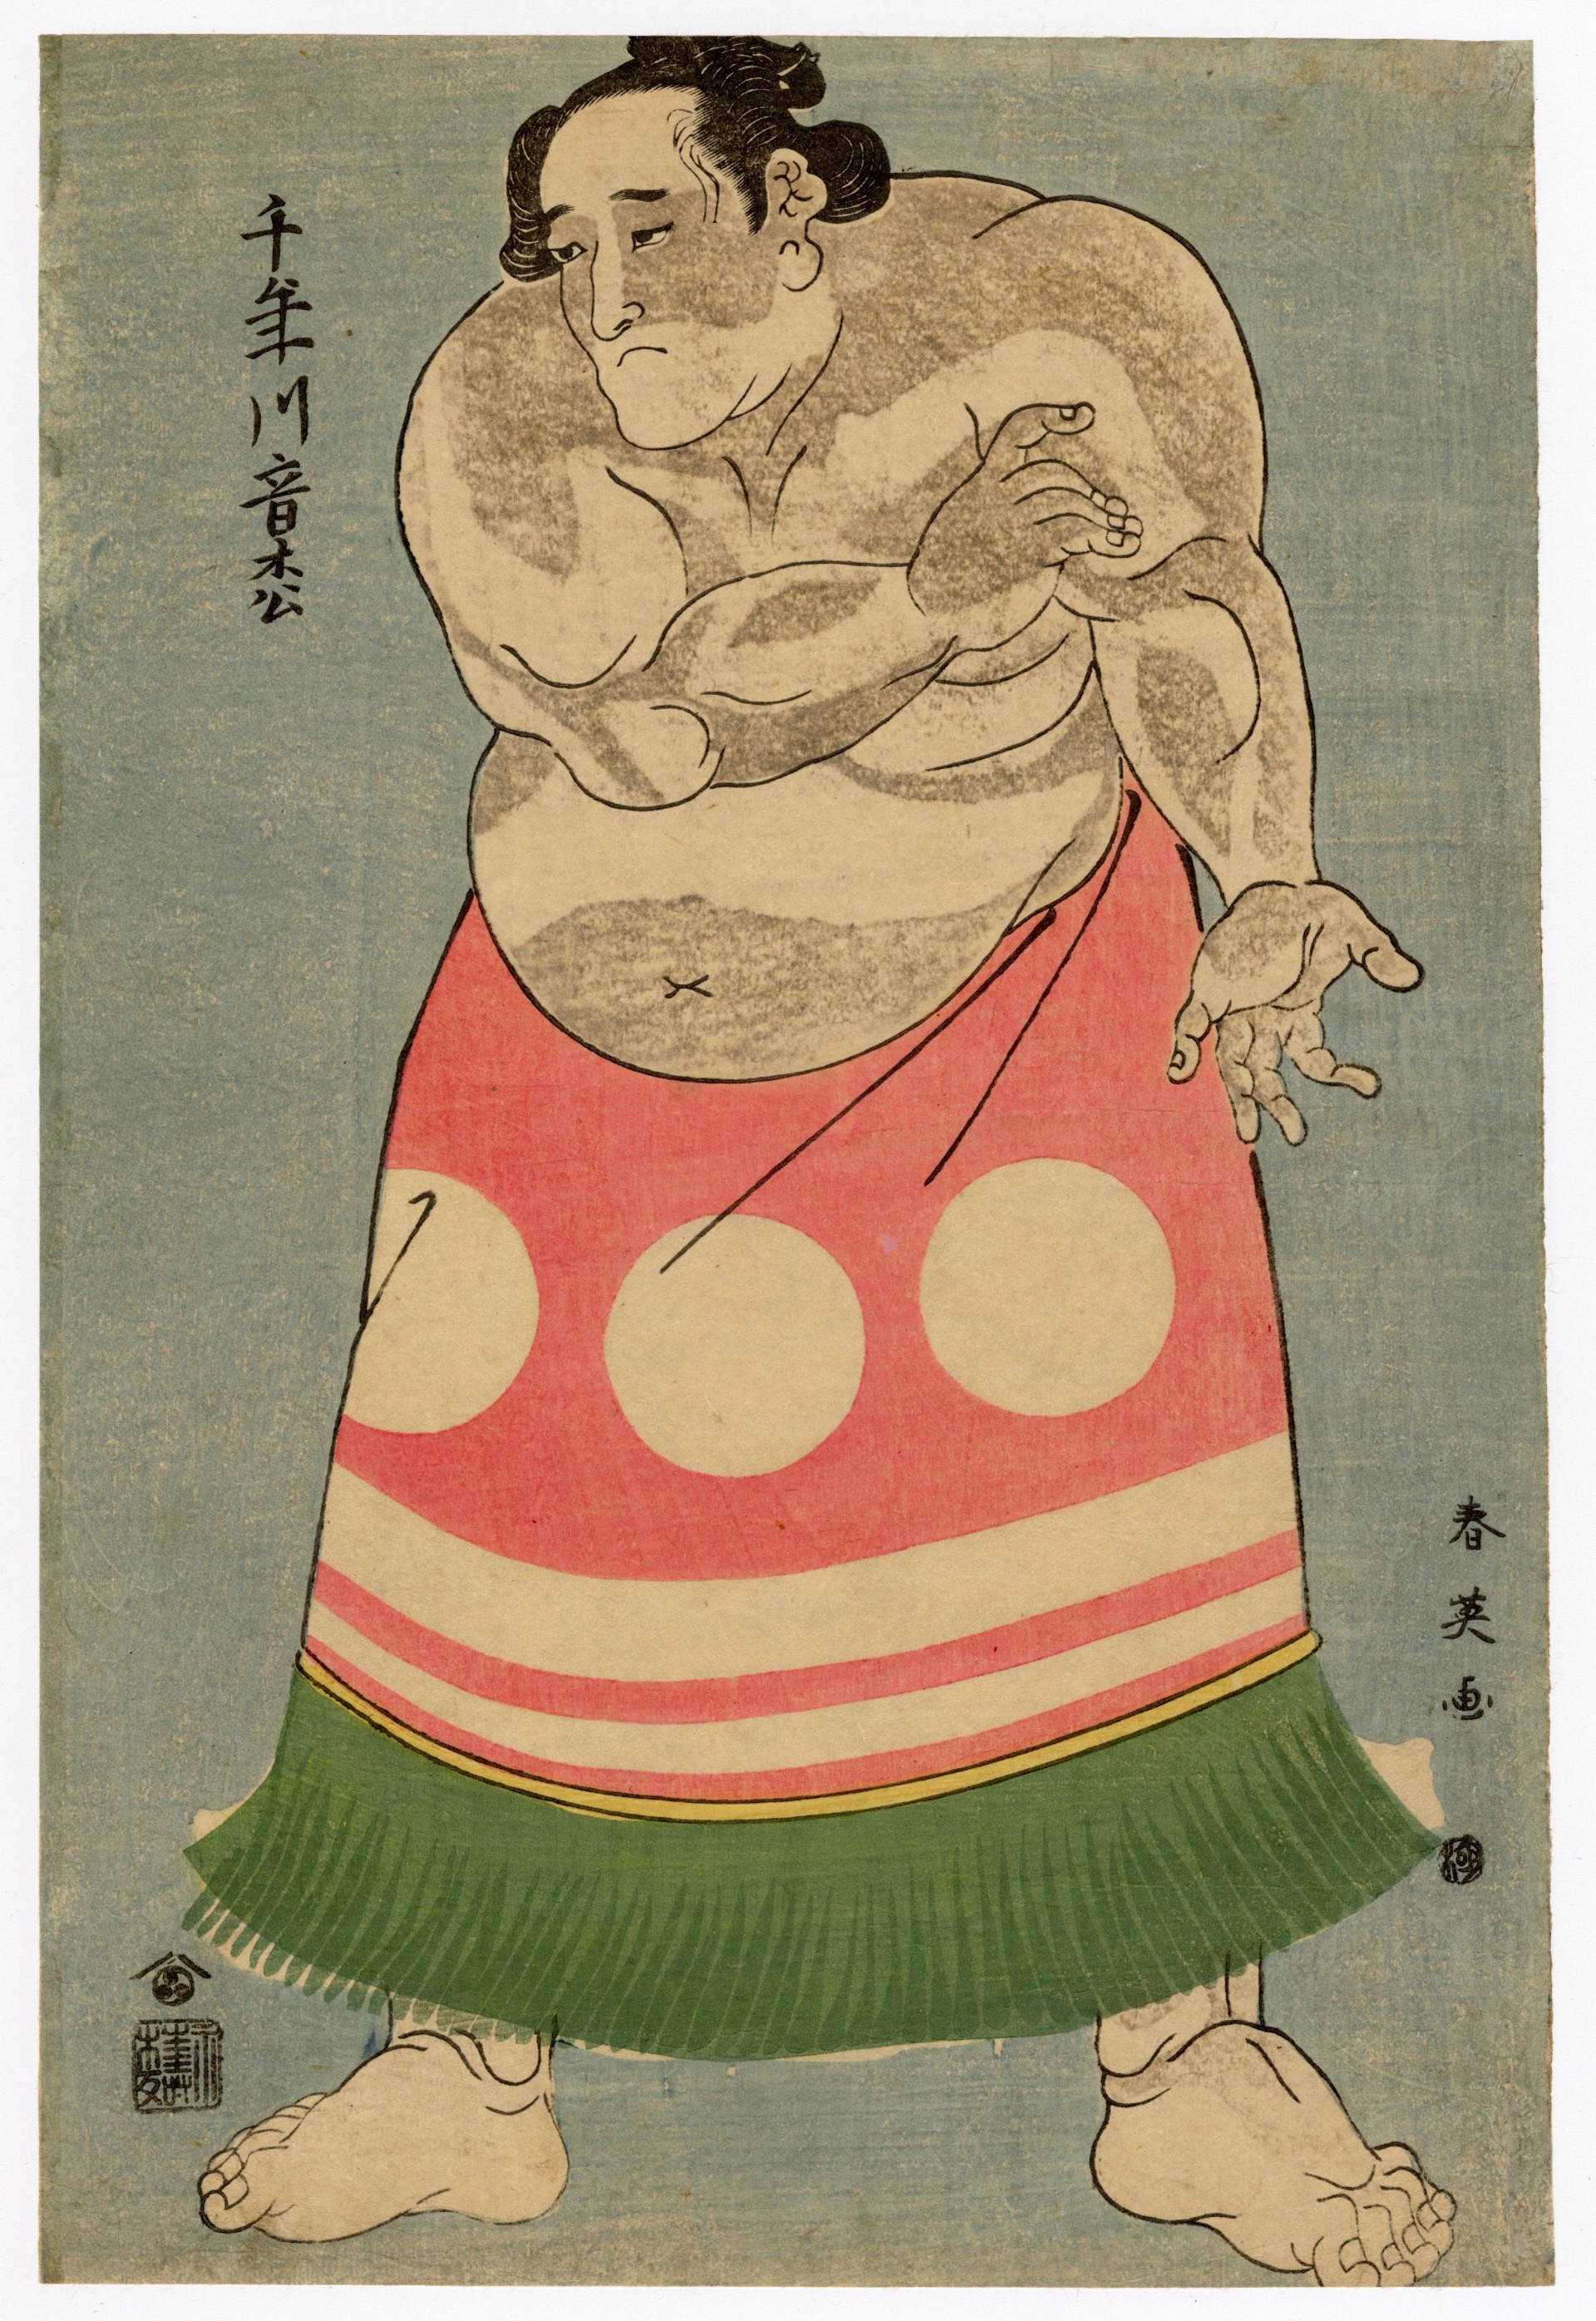 Chitosegawa Otomatsu by Shun'ei